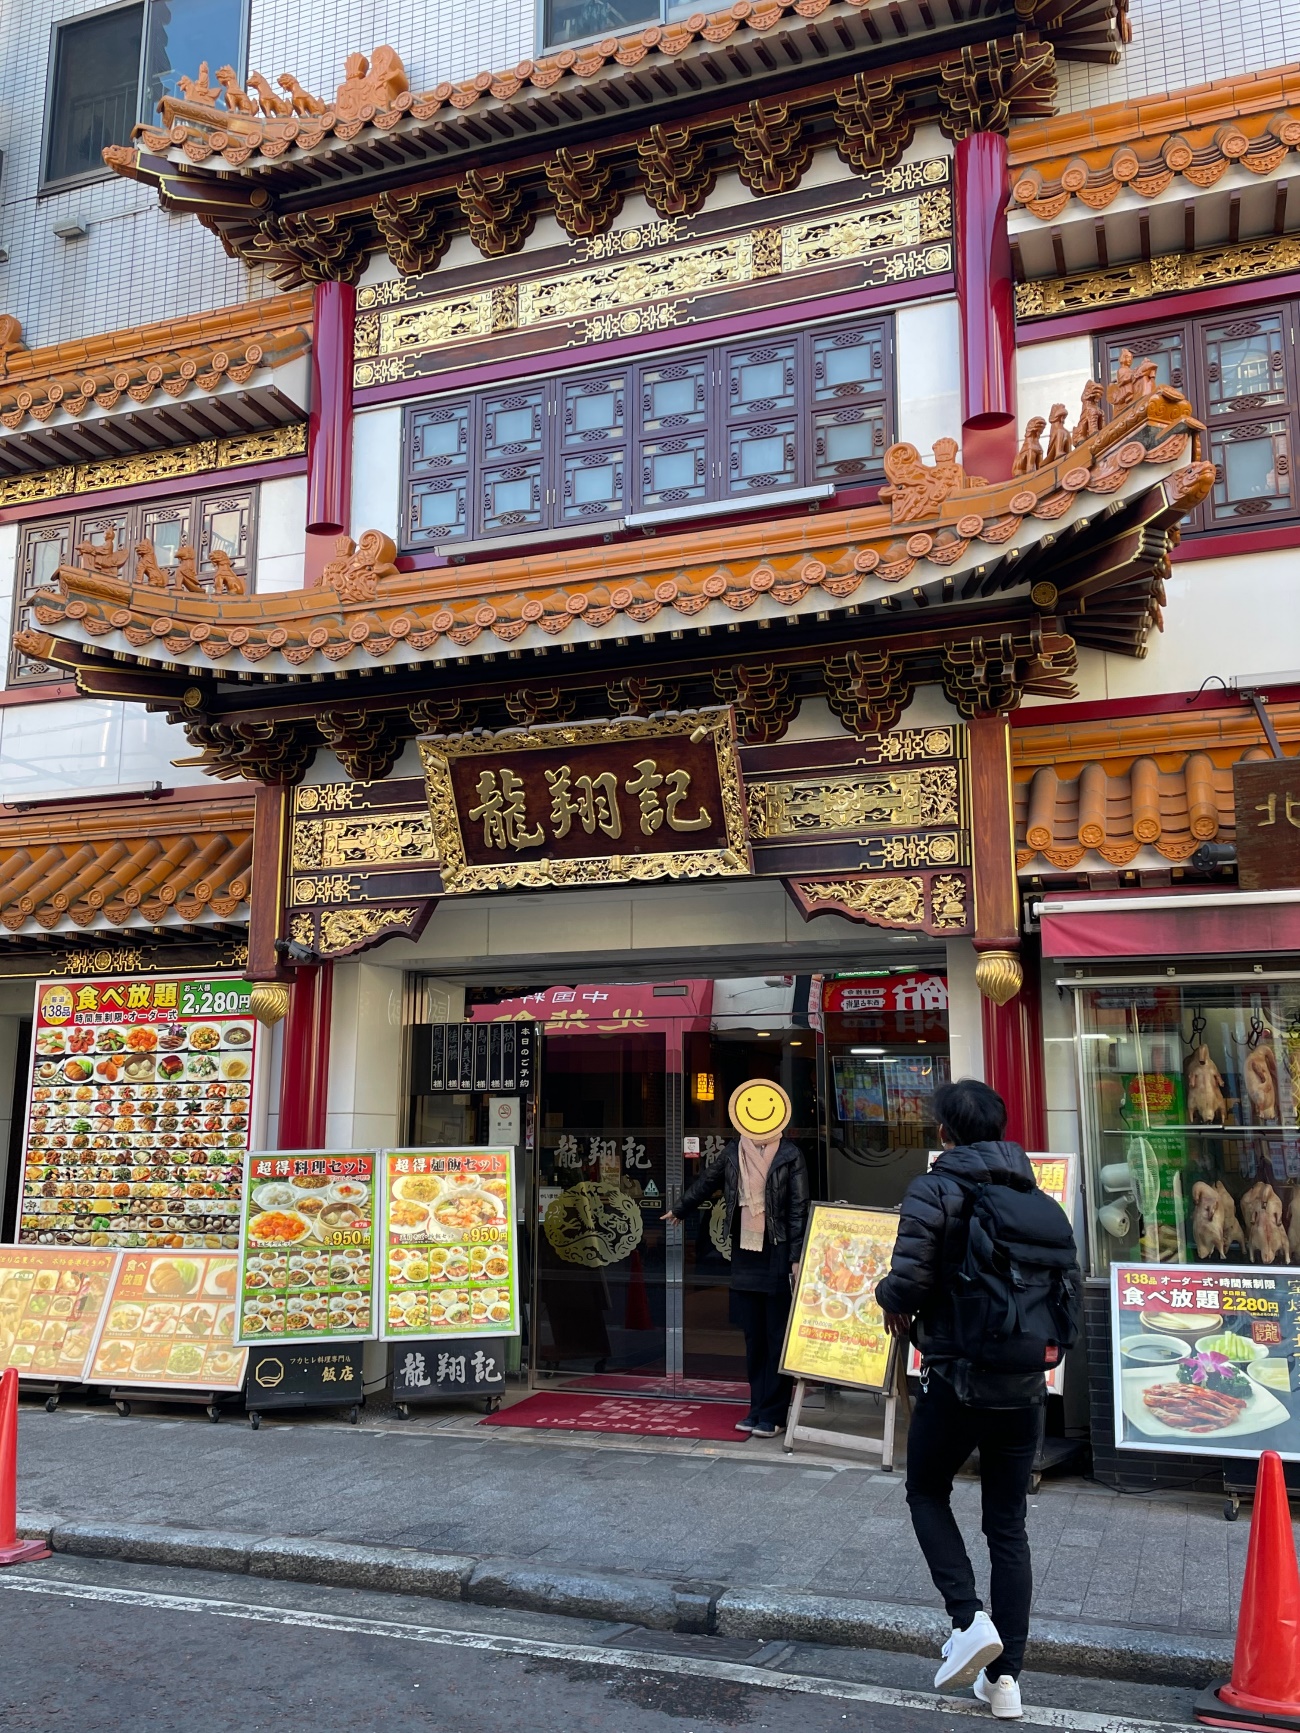 横浜中華街内に位置する中華料理店「龍翔記」の正面が写っている。関帝廟での参拝後、新年会を龍翔記で開催することになった様子の写真